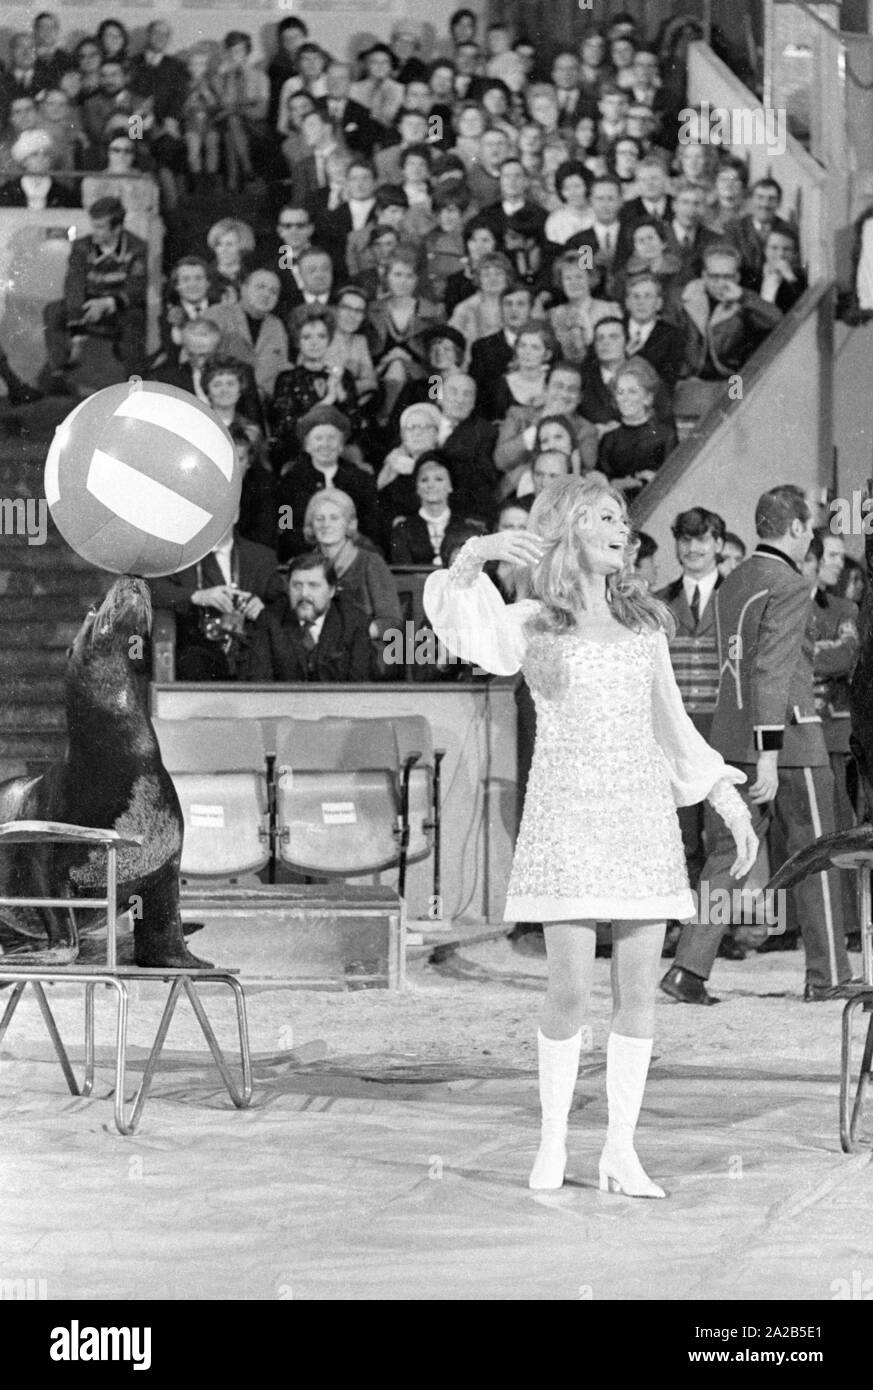 Un programme de cirque est organisé chaque année par des célébrités en face d'un auditoire pour l'émission de télévision 'Die Goldene Zehn' au Circus Krone à Munich. Photo d'une femme vêtue de blanc lors d'une performance avec les lions de mer. Elle est probablement Vivi Bach. Banque D'Images